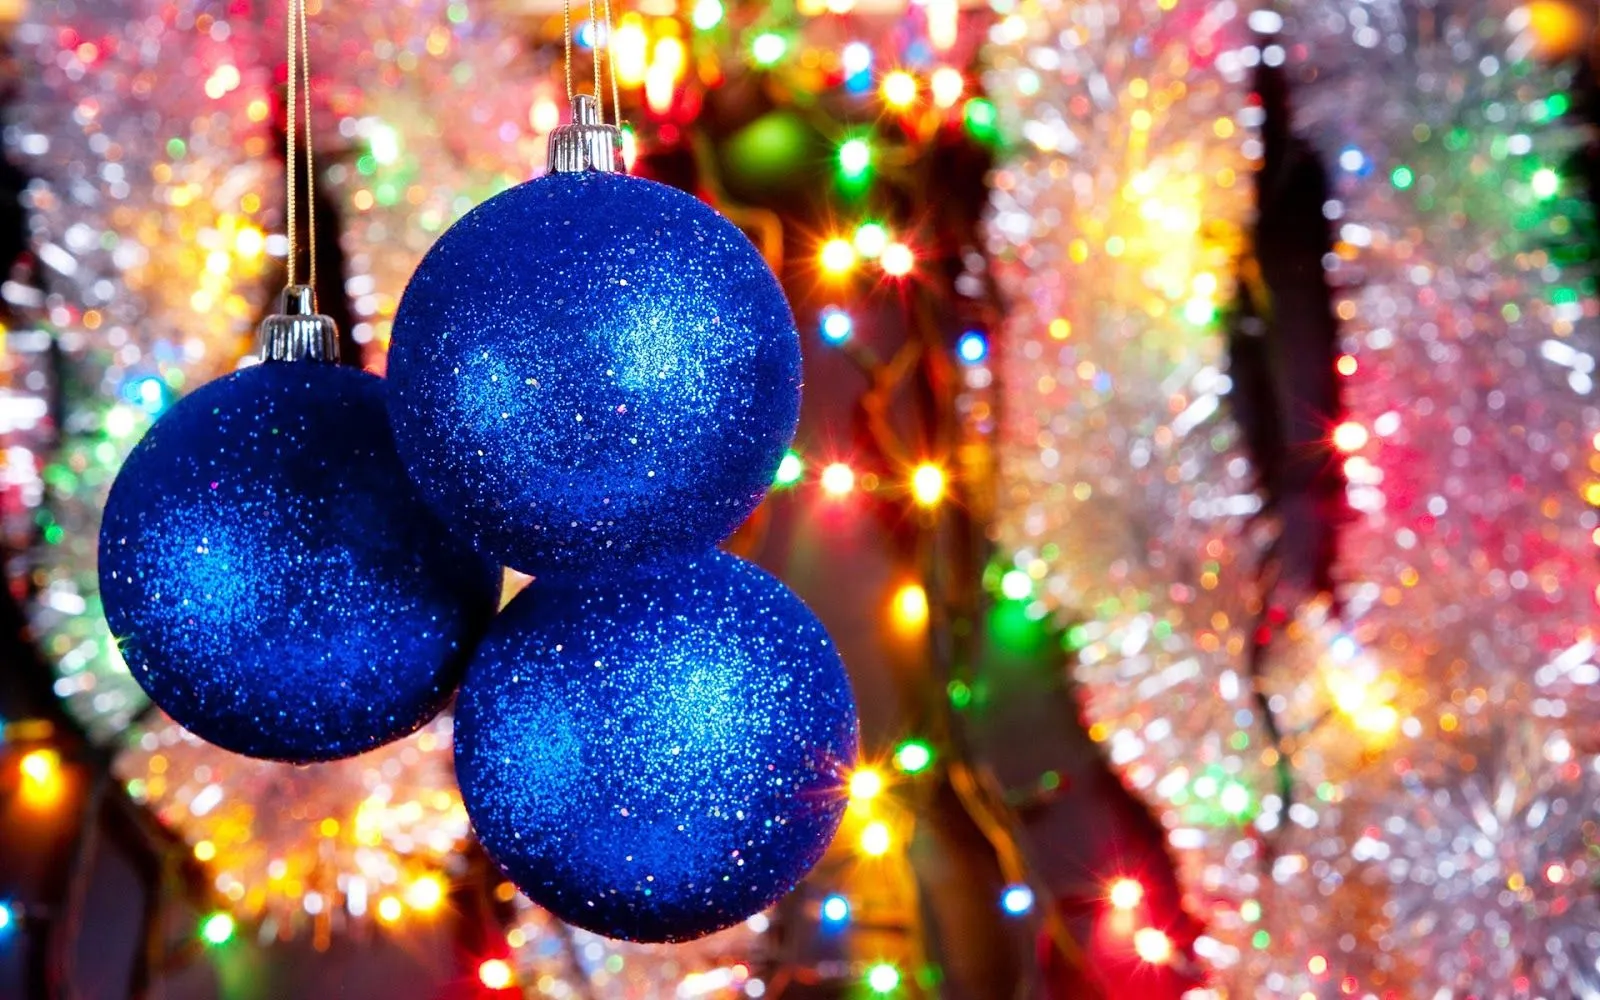 wallpapernarium: Tres bolas de navidad azules